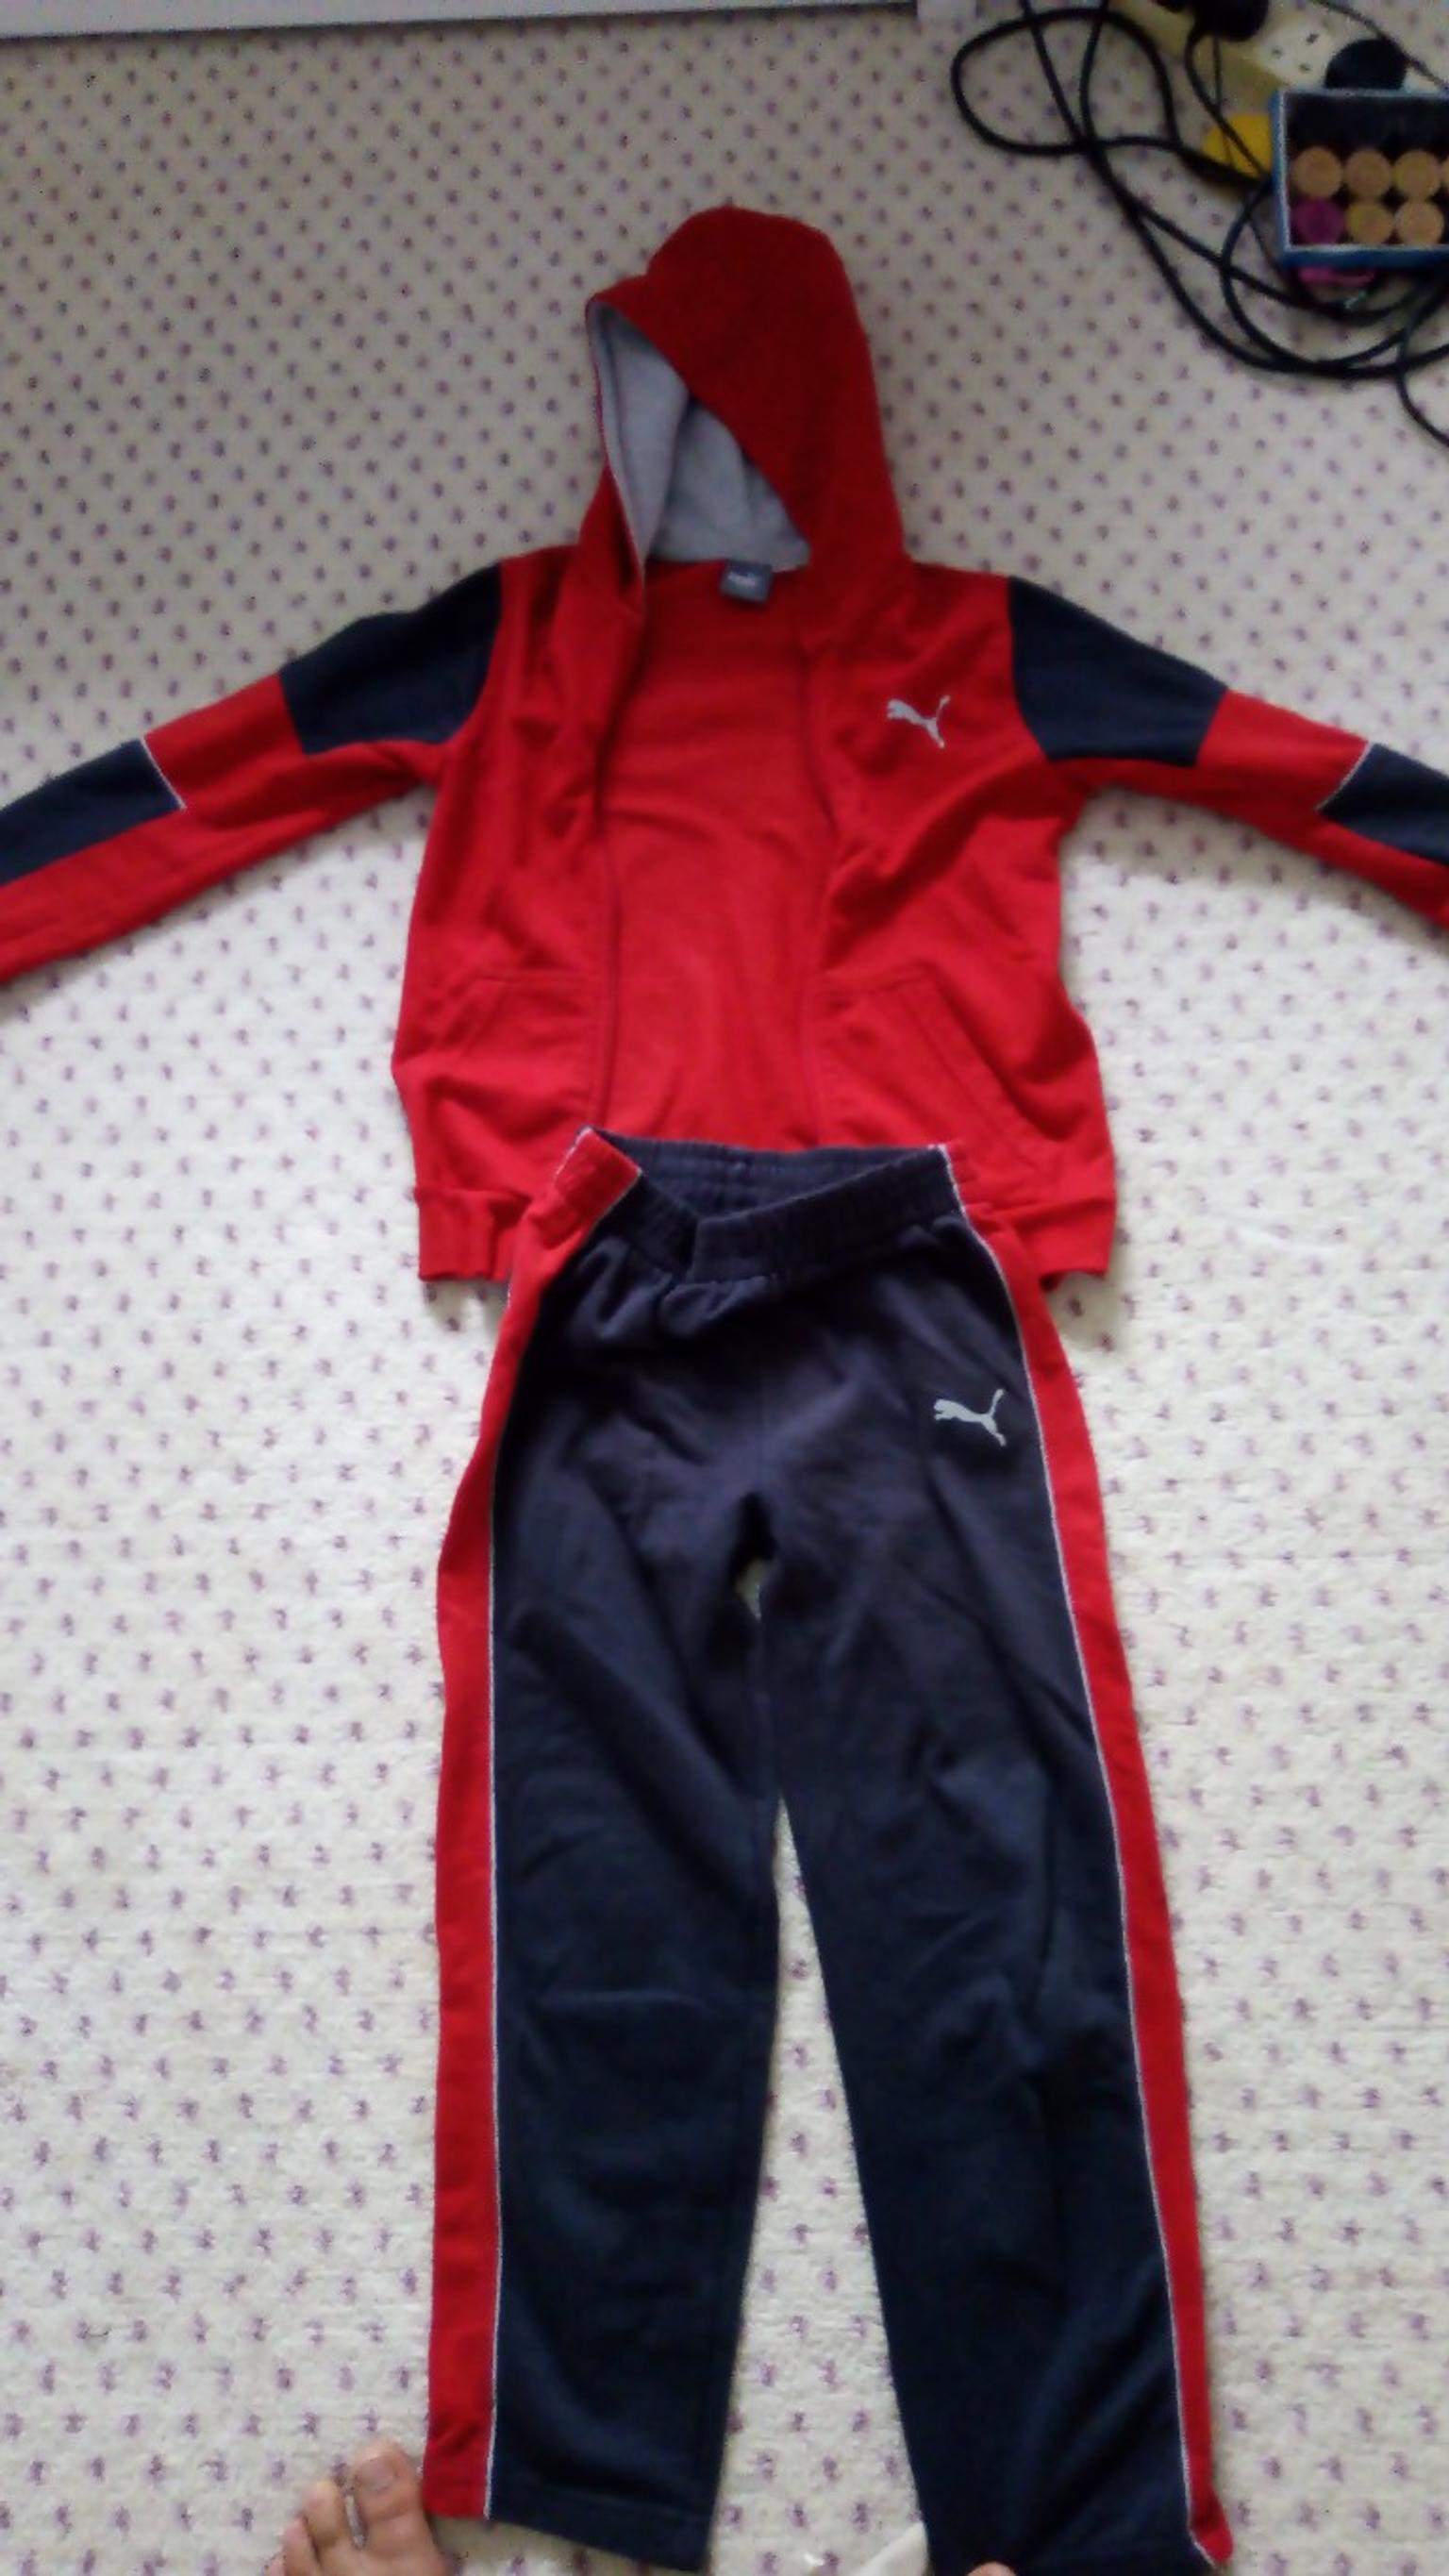 red puma jogging suit